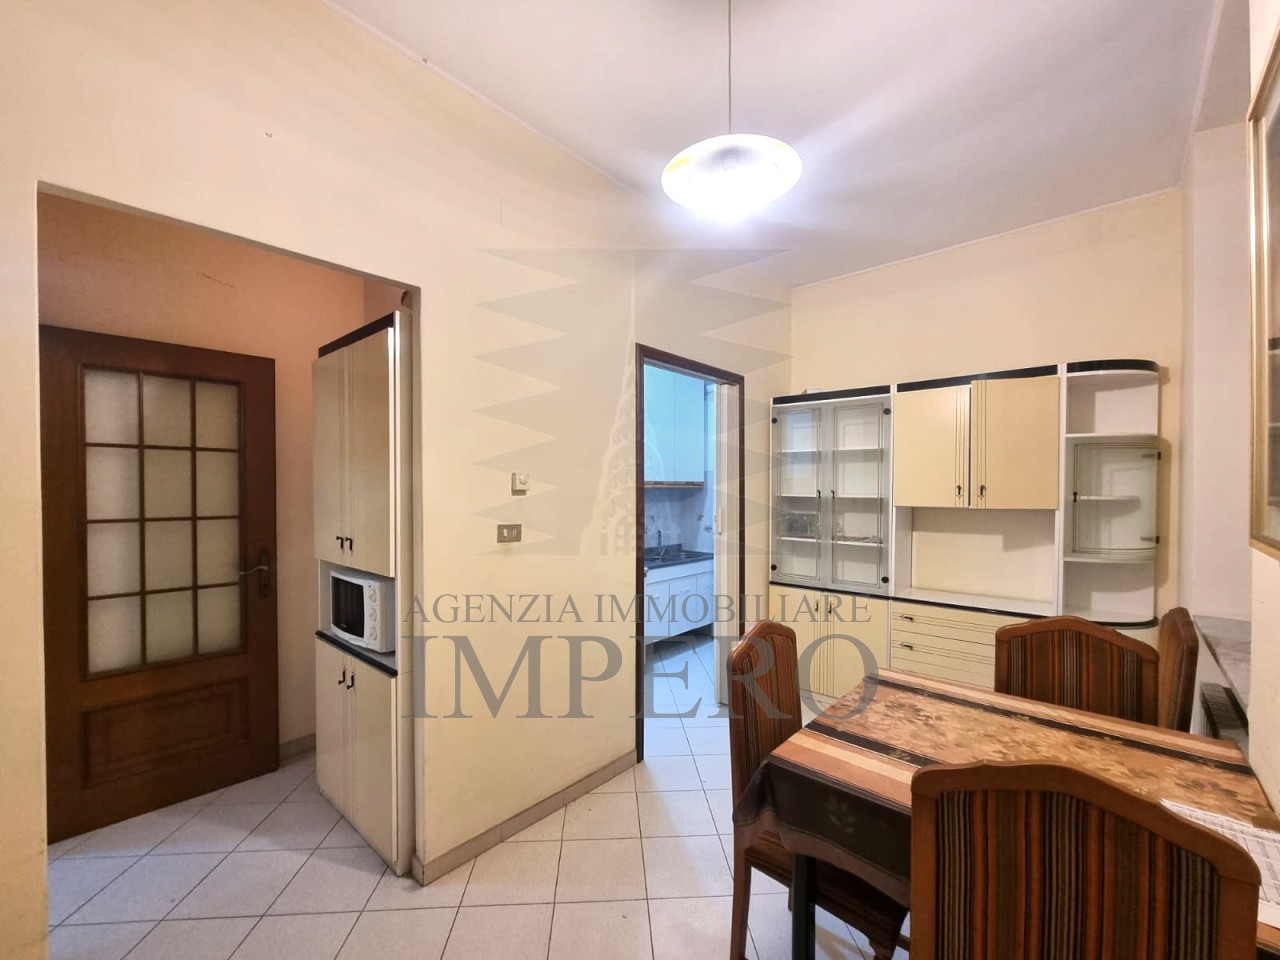 Appartamento in vendita a Ventimiglia, 3 locali, prezzo € 149.000 | PortaleAgenzieImmobiliari.it